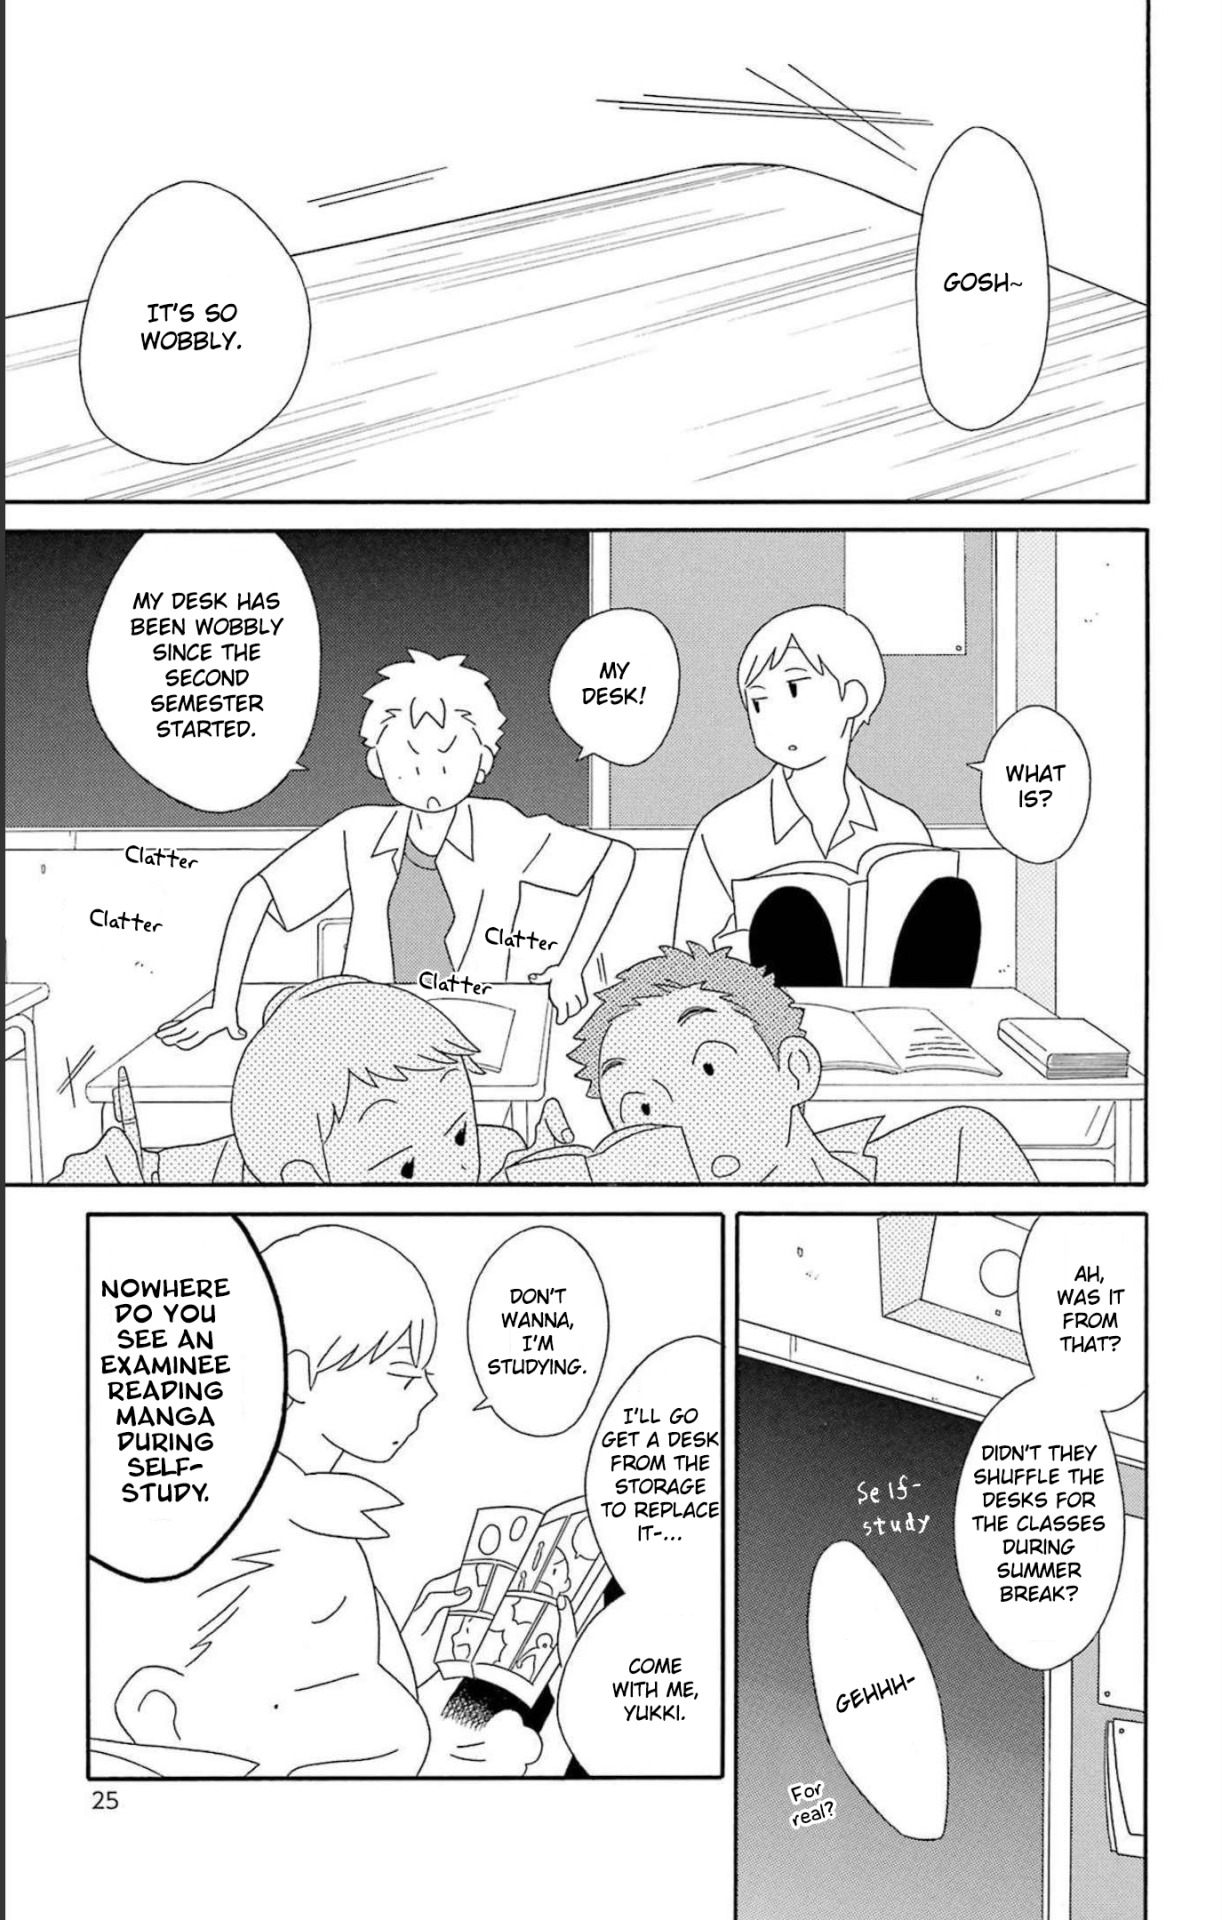 Kimi to Boku (You and Me) – Anime and Manga Comparison